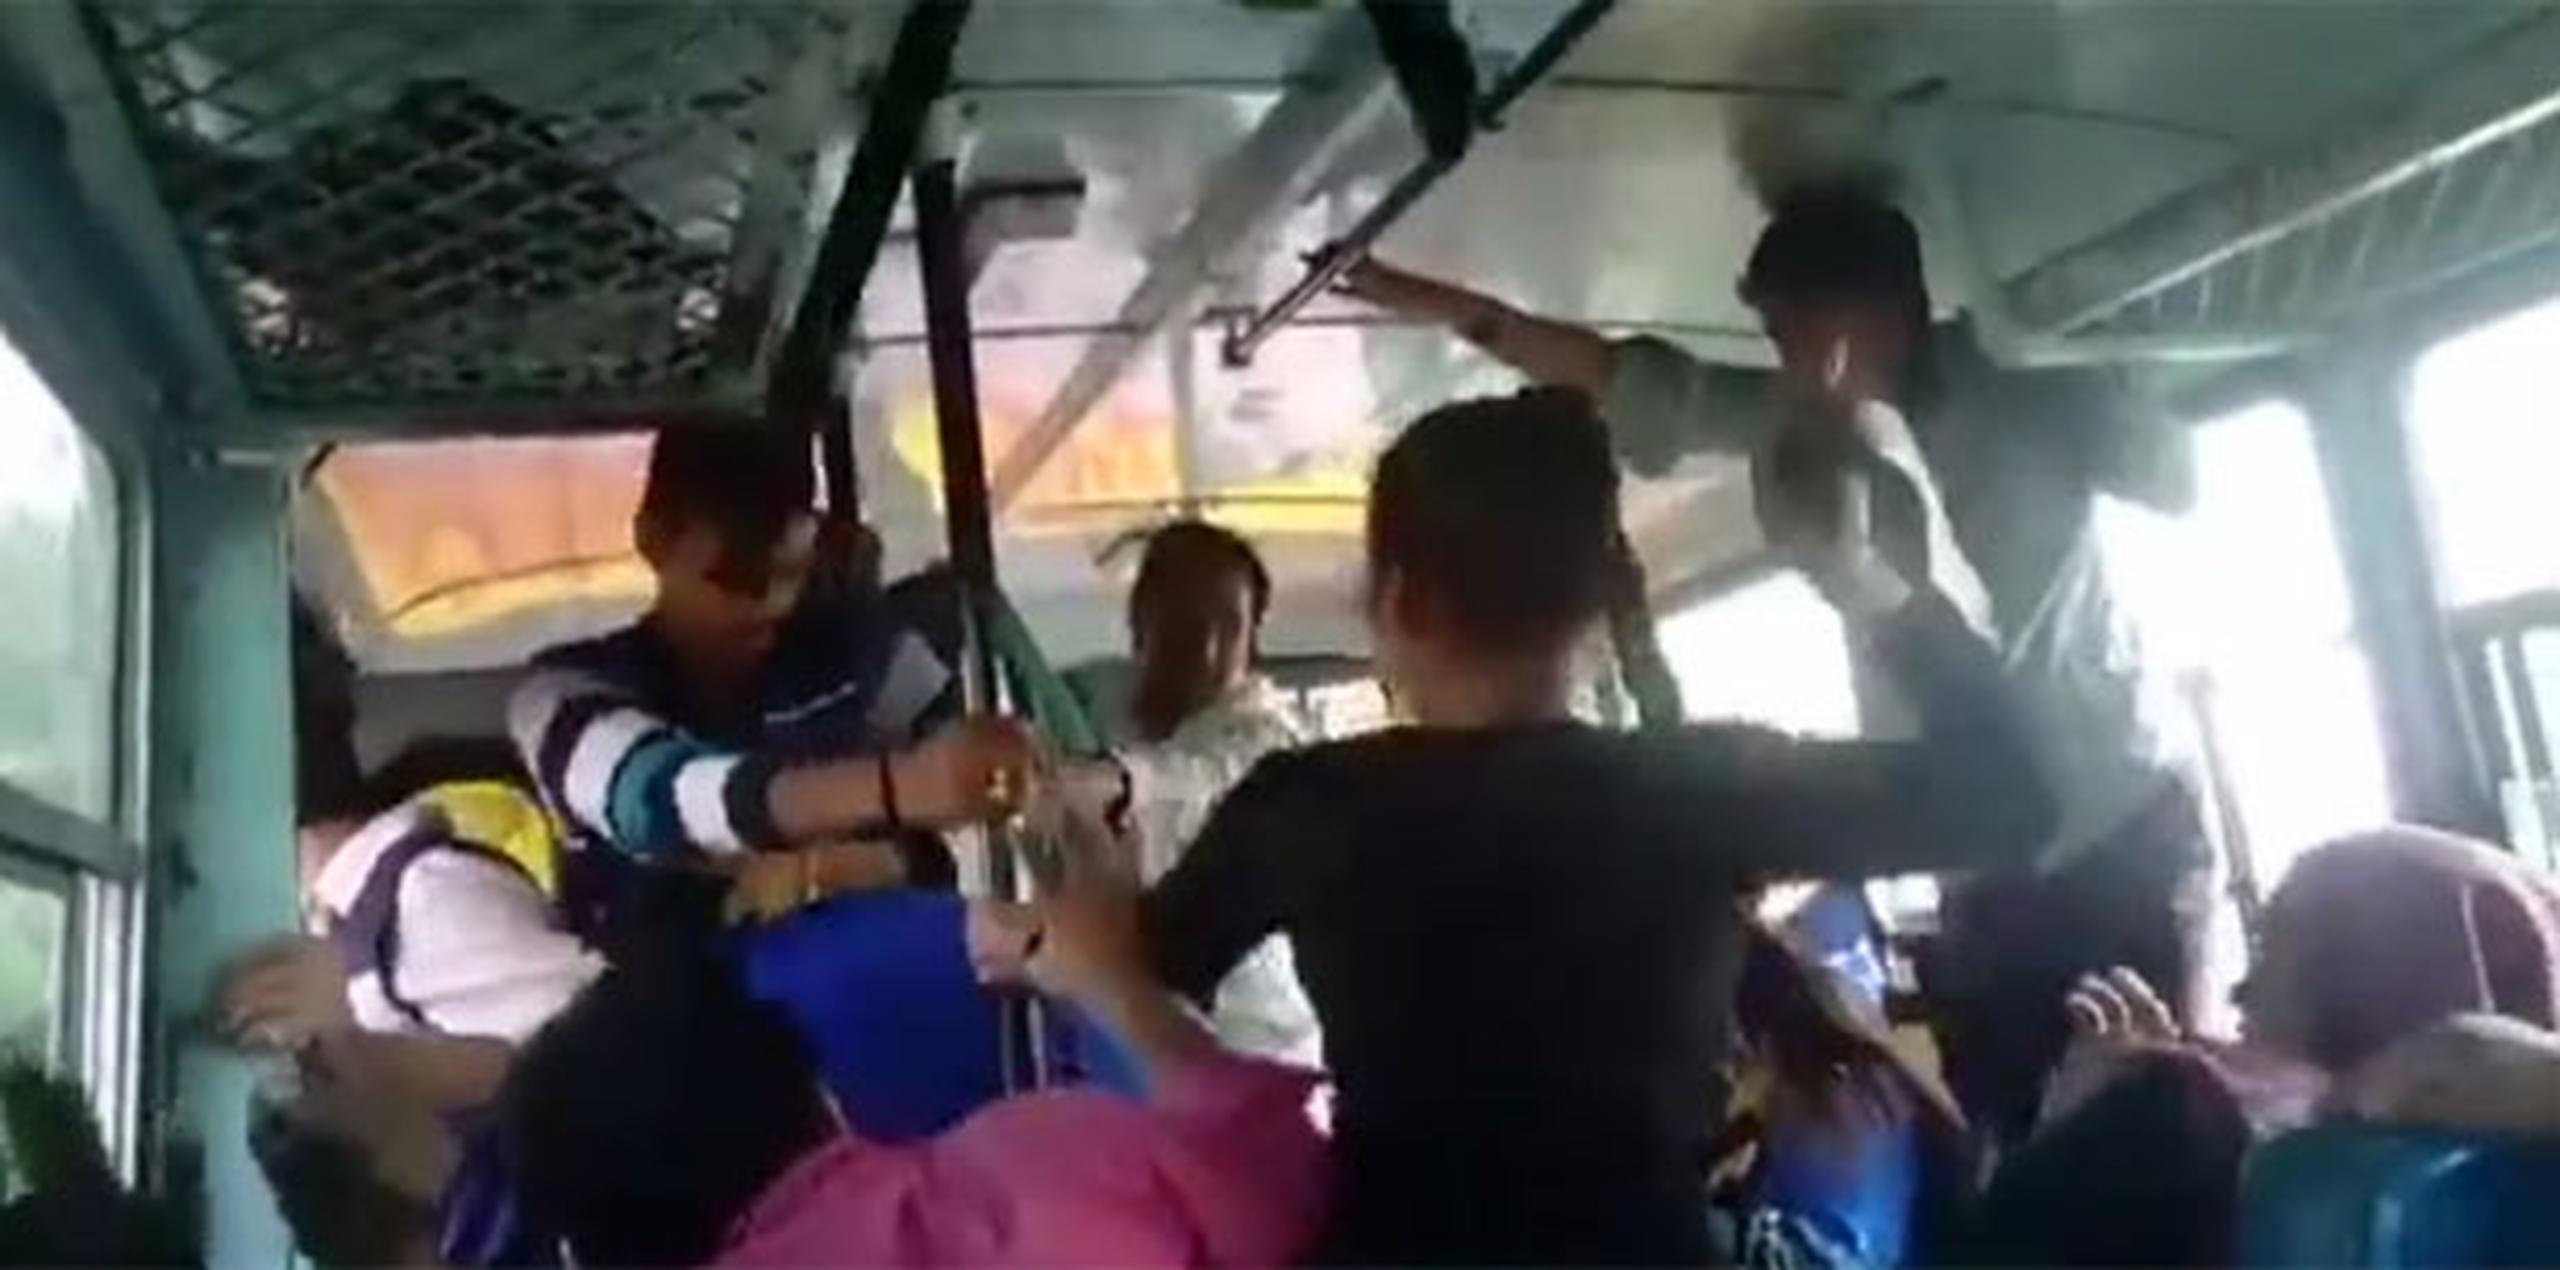 Las hermanas dijeron que ninguno de los otros pasajeros del autobús la socorrió y que les dijeron que no provocaran a los hombres porque podían atacarlas después o echarles ácido. (YouTube)